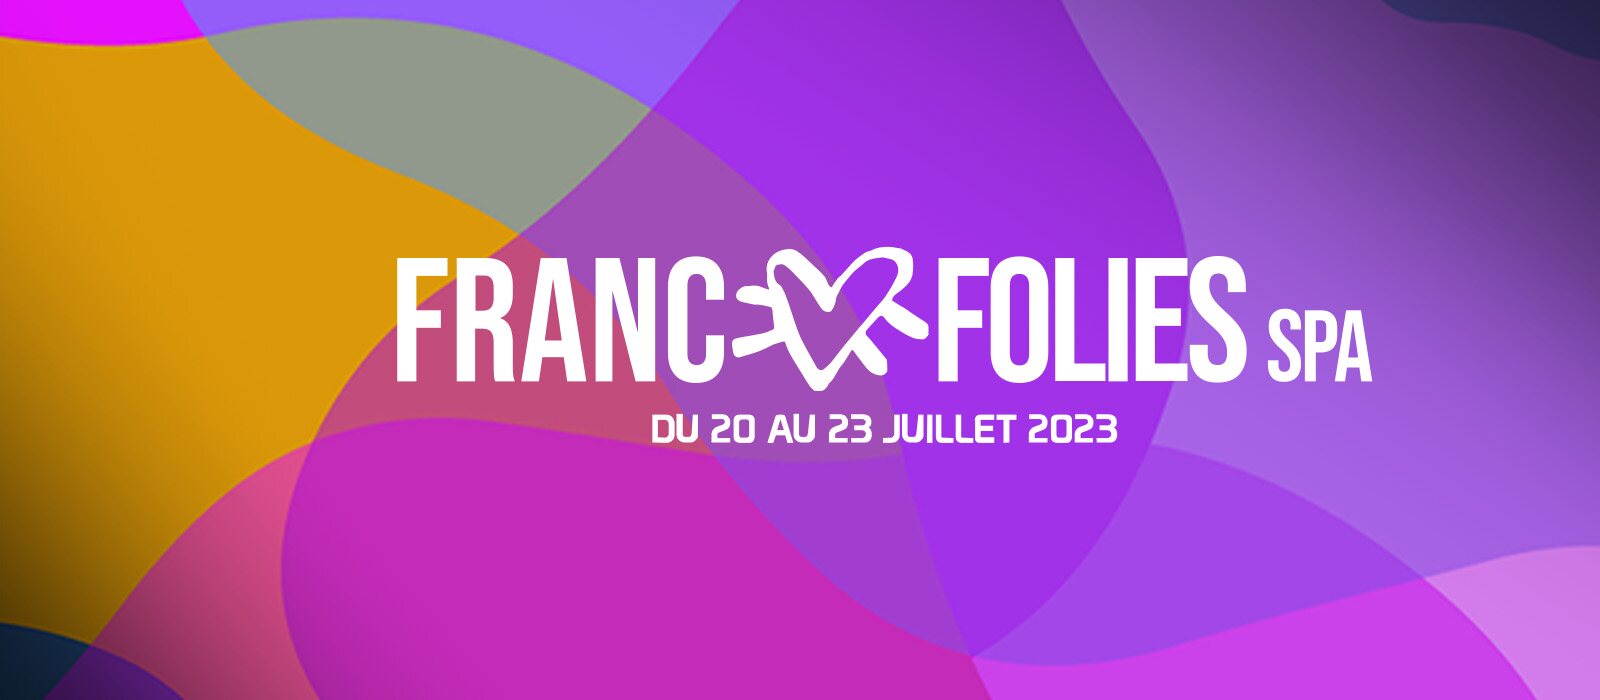 Les Francofolies 2023